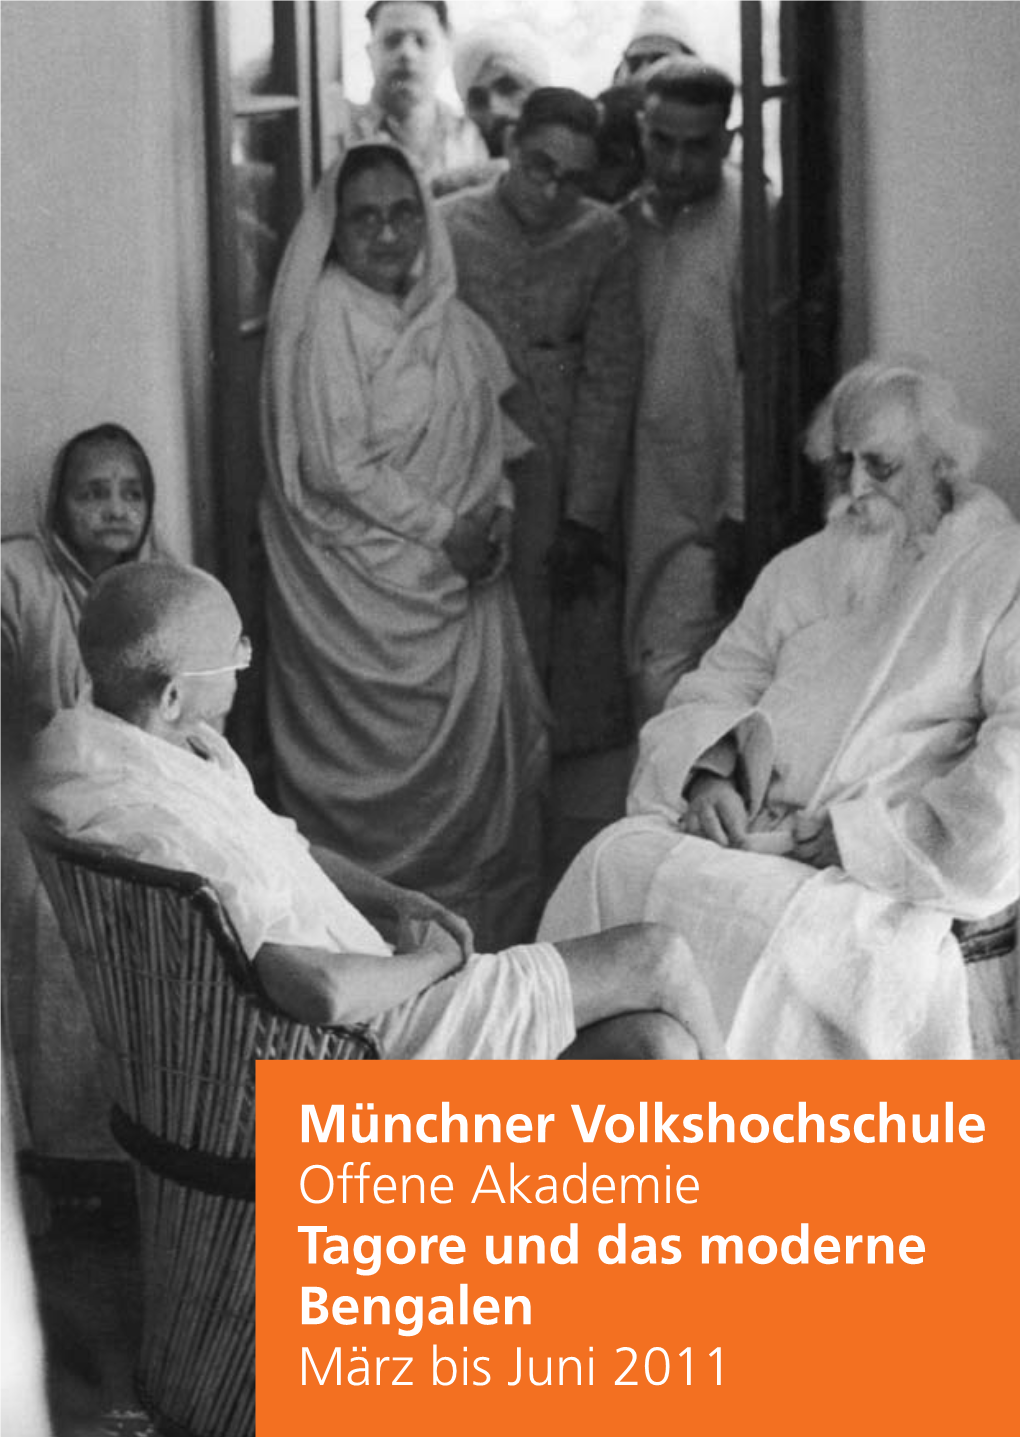 Münchner Volkshochschule Offene Akademie Tagore Und Das Moderne Bengalen März Bis Juni 2011 Tagore Und Das Moderne Bengalen